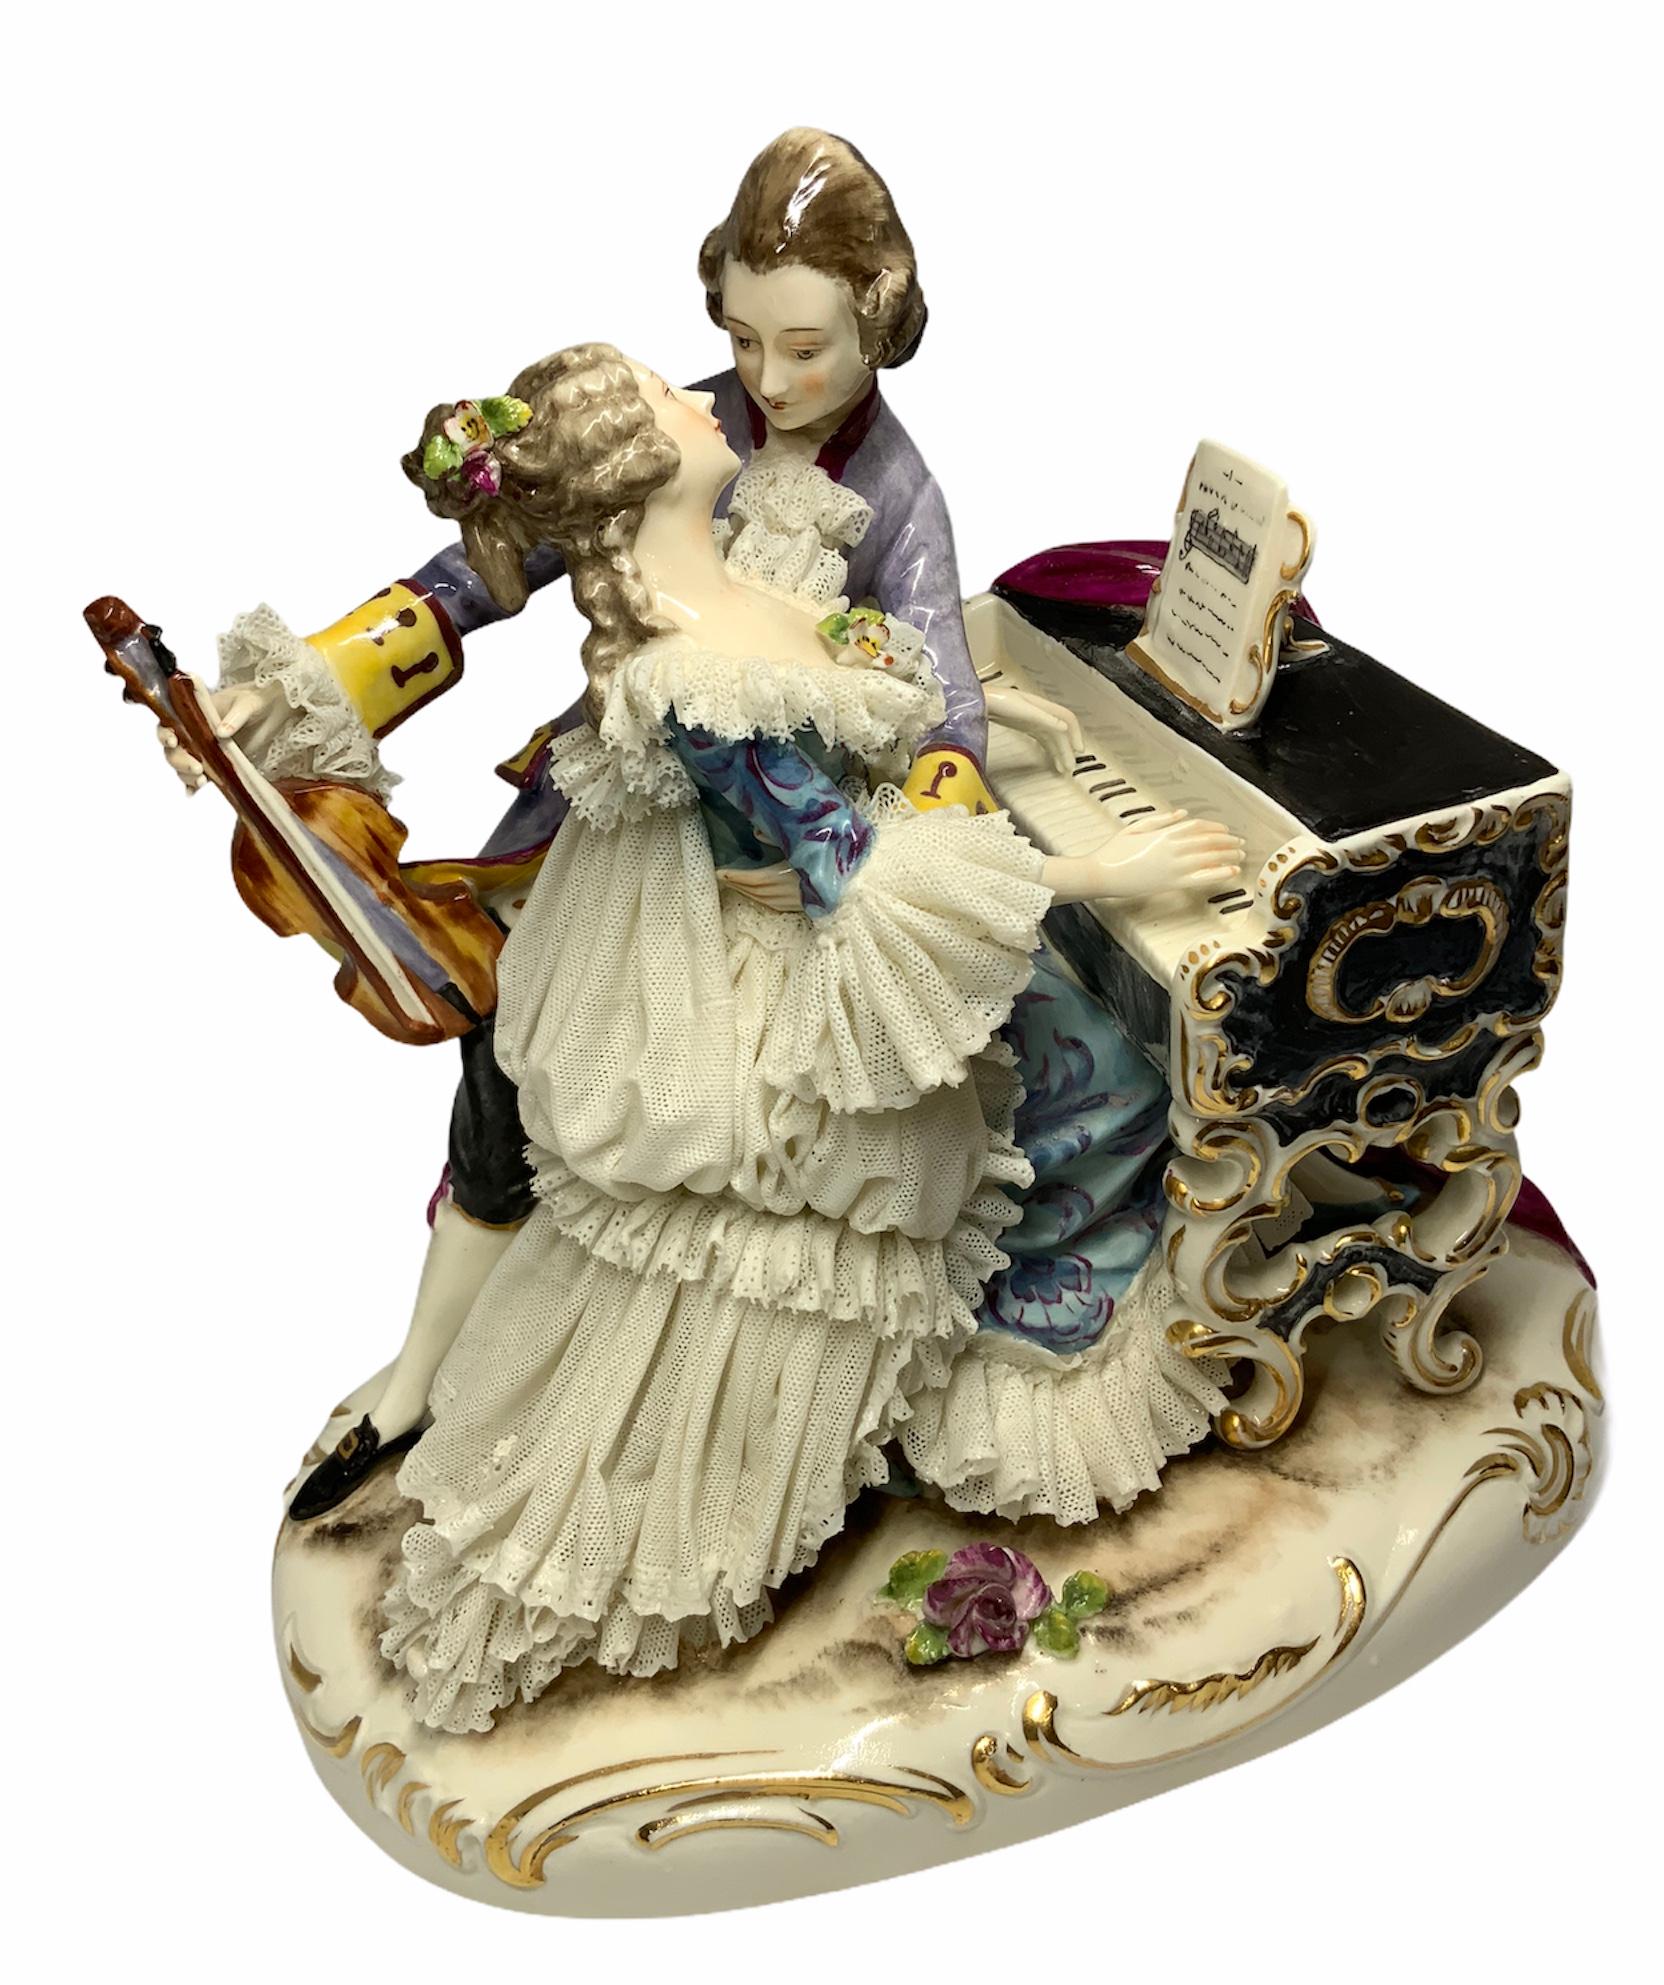 Il s'agit d'une porcelaine de Dresde représentant un couple de musiciens amoureux. Elle joue sur un petit piano noir de style Louis XV tandis qu'il tient le violon de la main droite et l'enlace du bras gauche:: presque prêt à l'embrasser. Ils